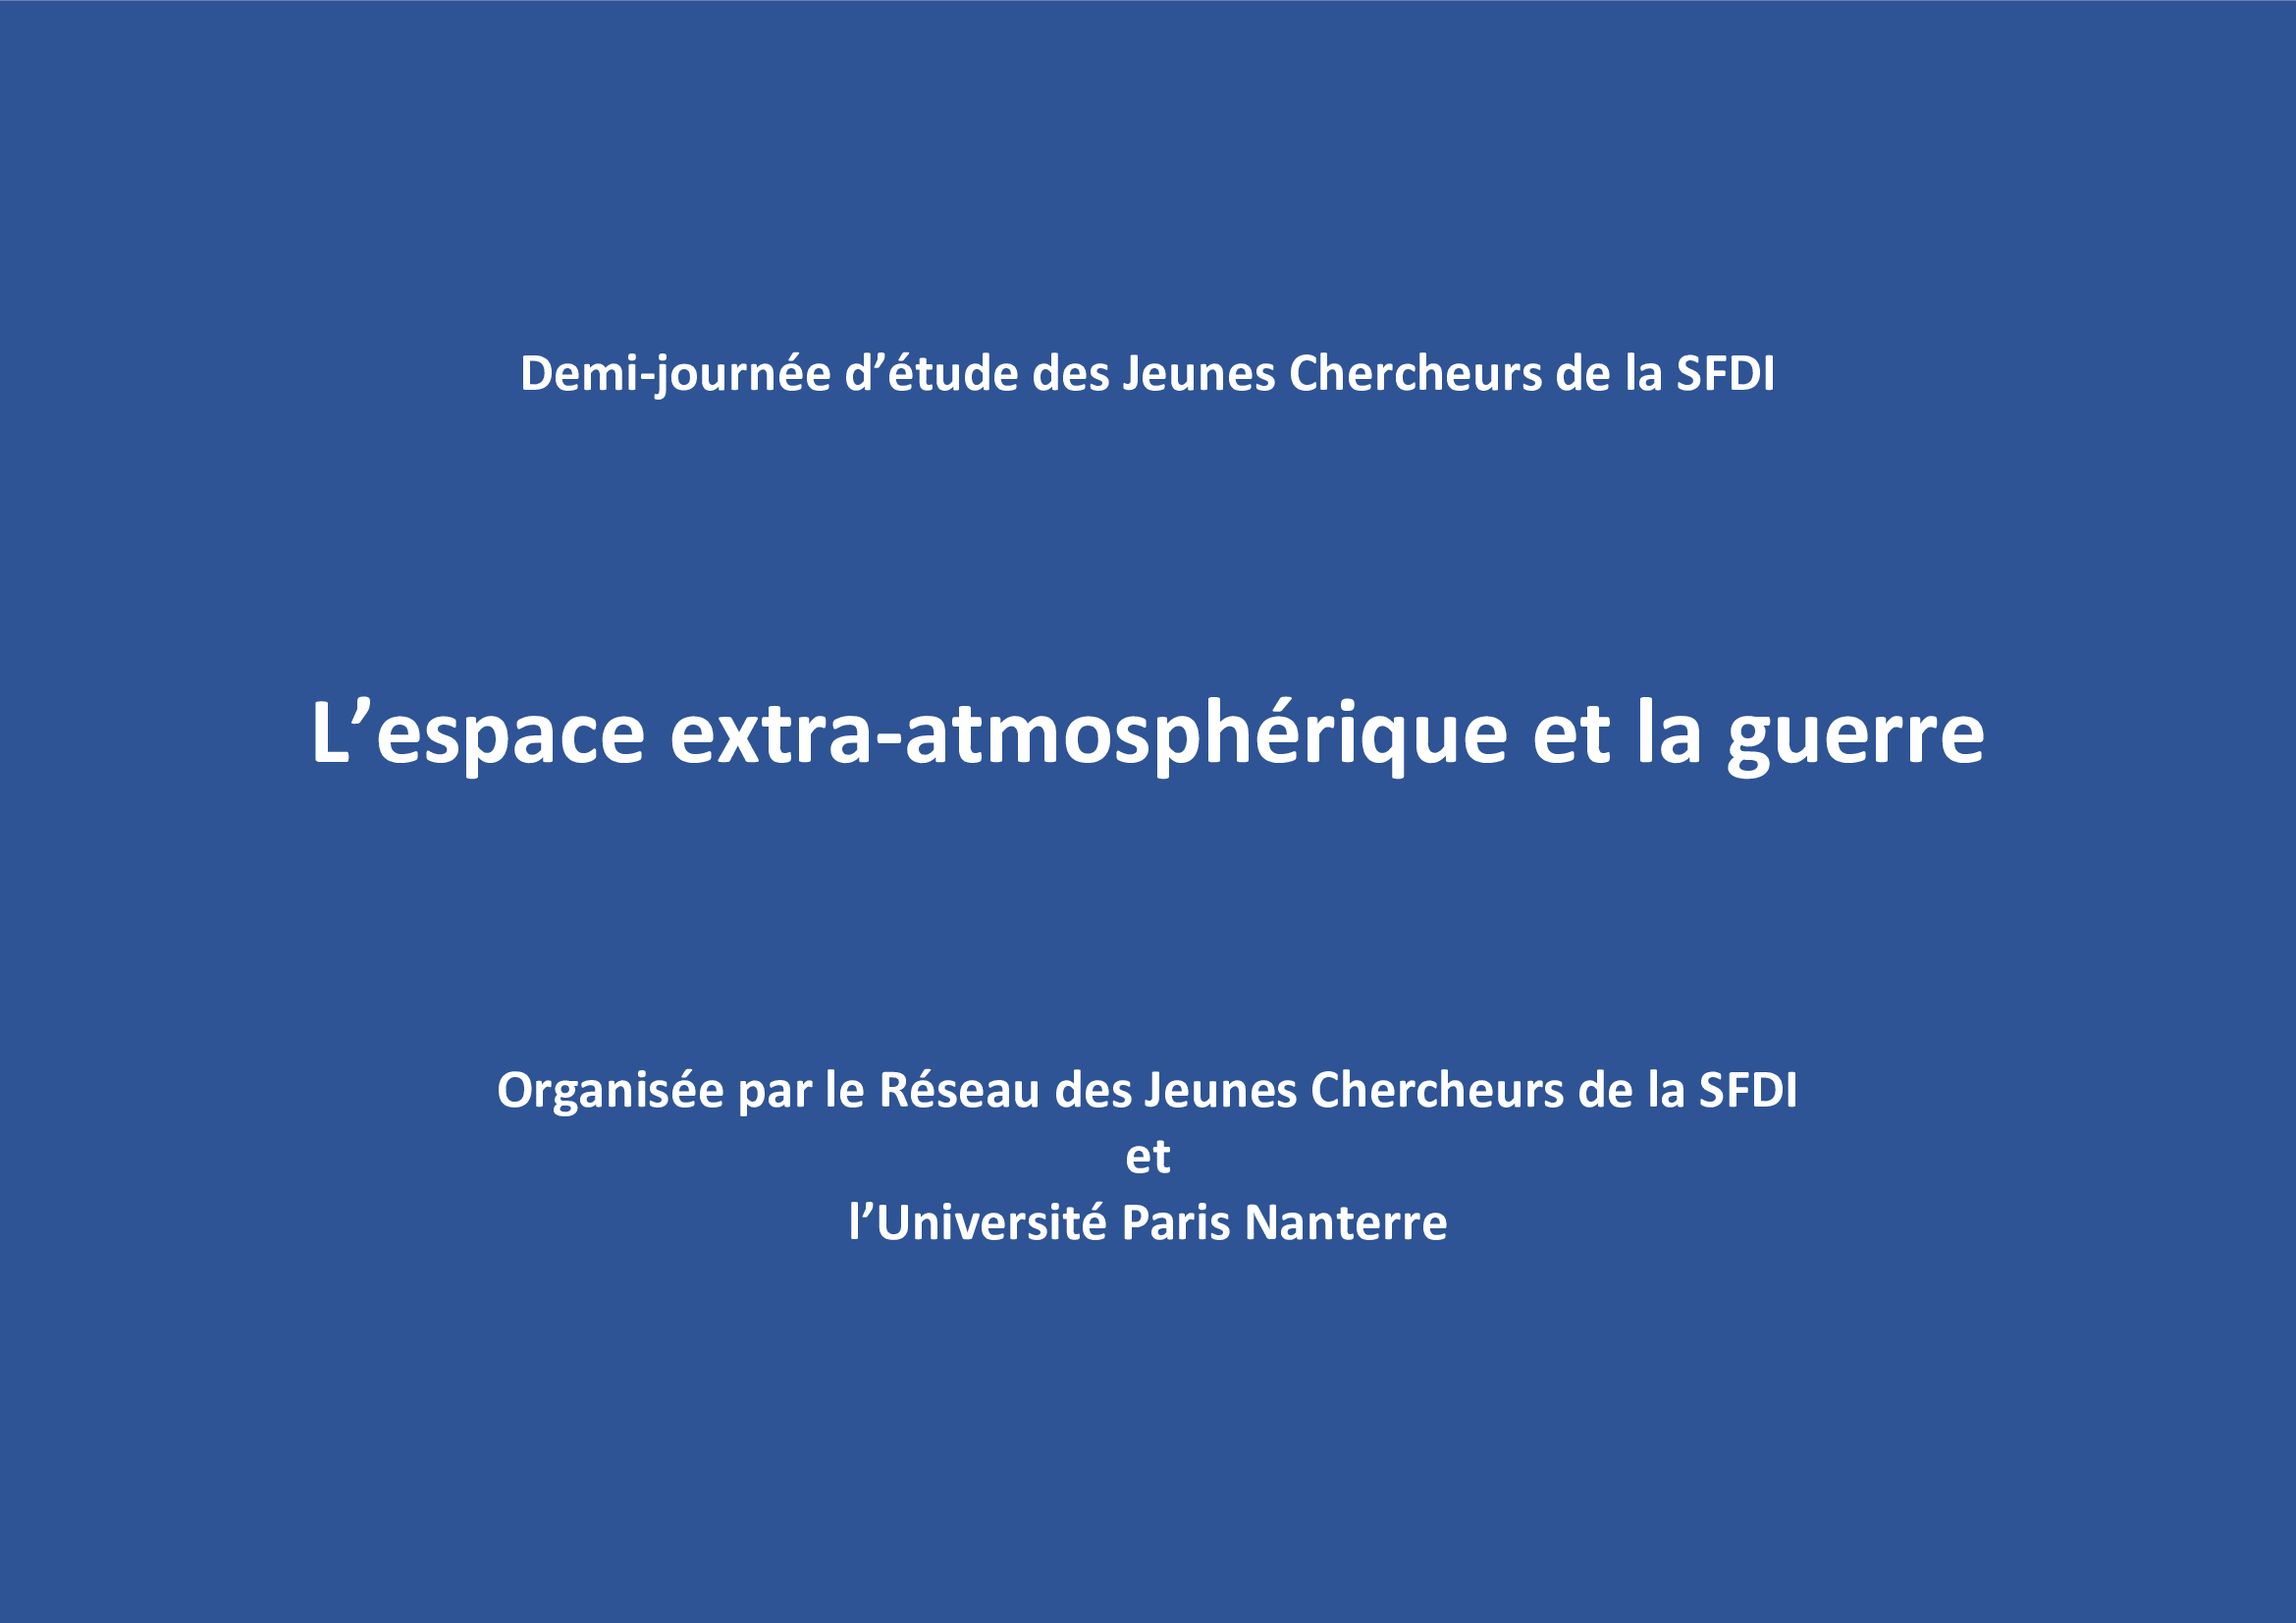 "L’inspection internationale spatiale au service de la paix", par R. Maurel